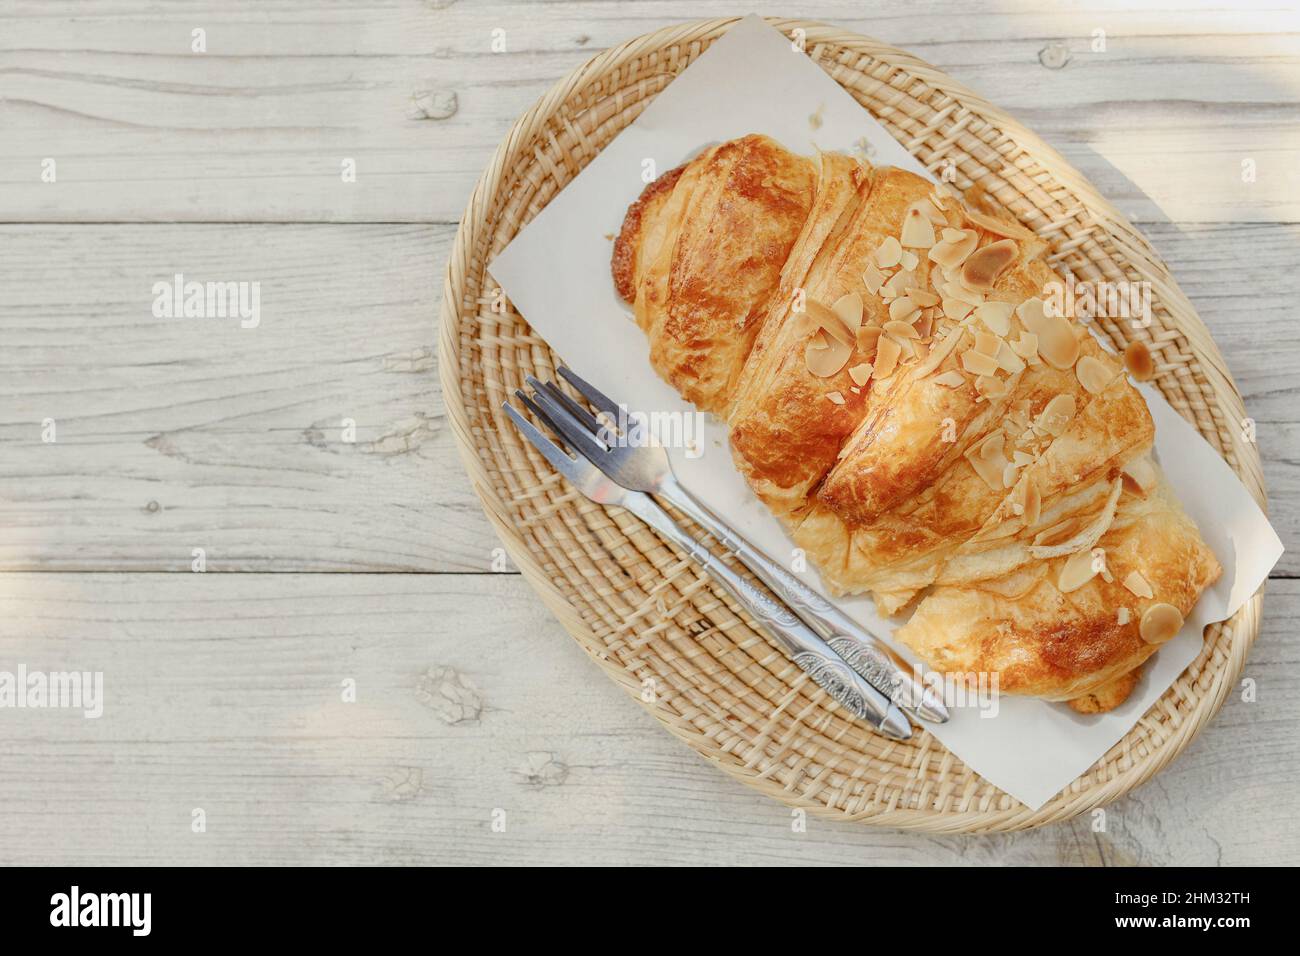 Croissant lecker leckeres hausgemachtes französisches Brot auf Holz Hintergrund. Stockfoto